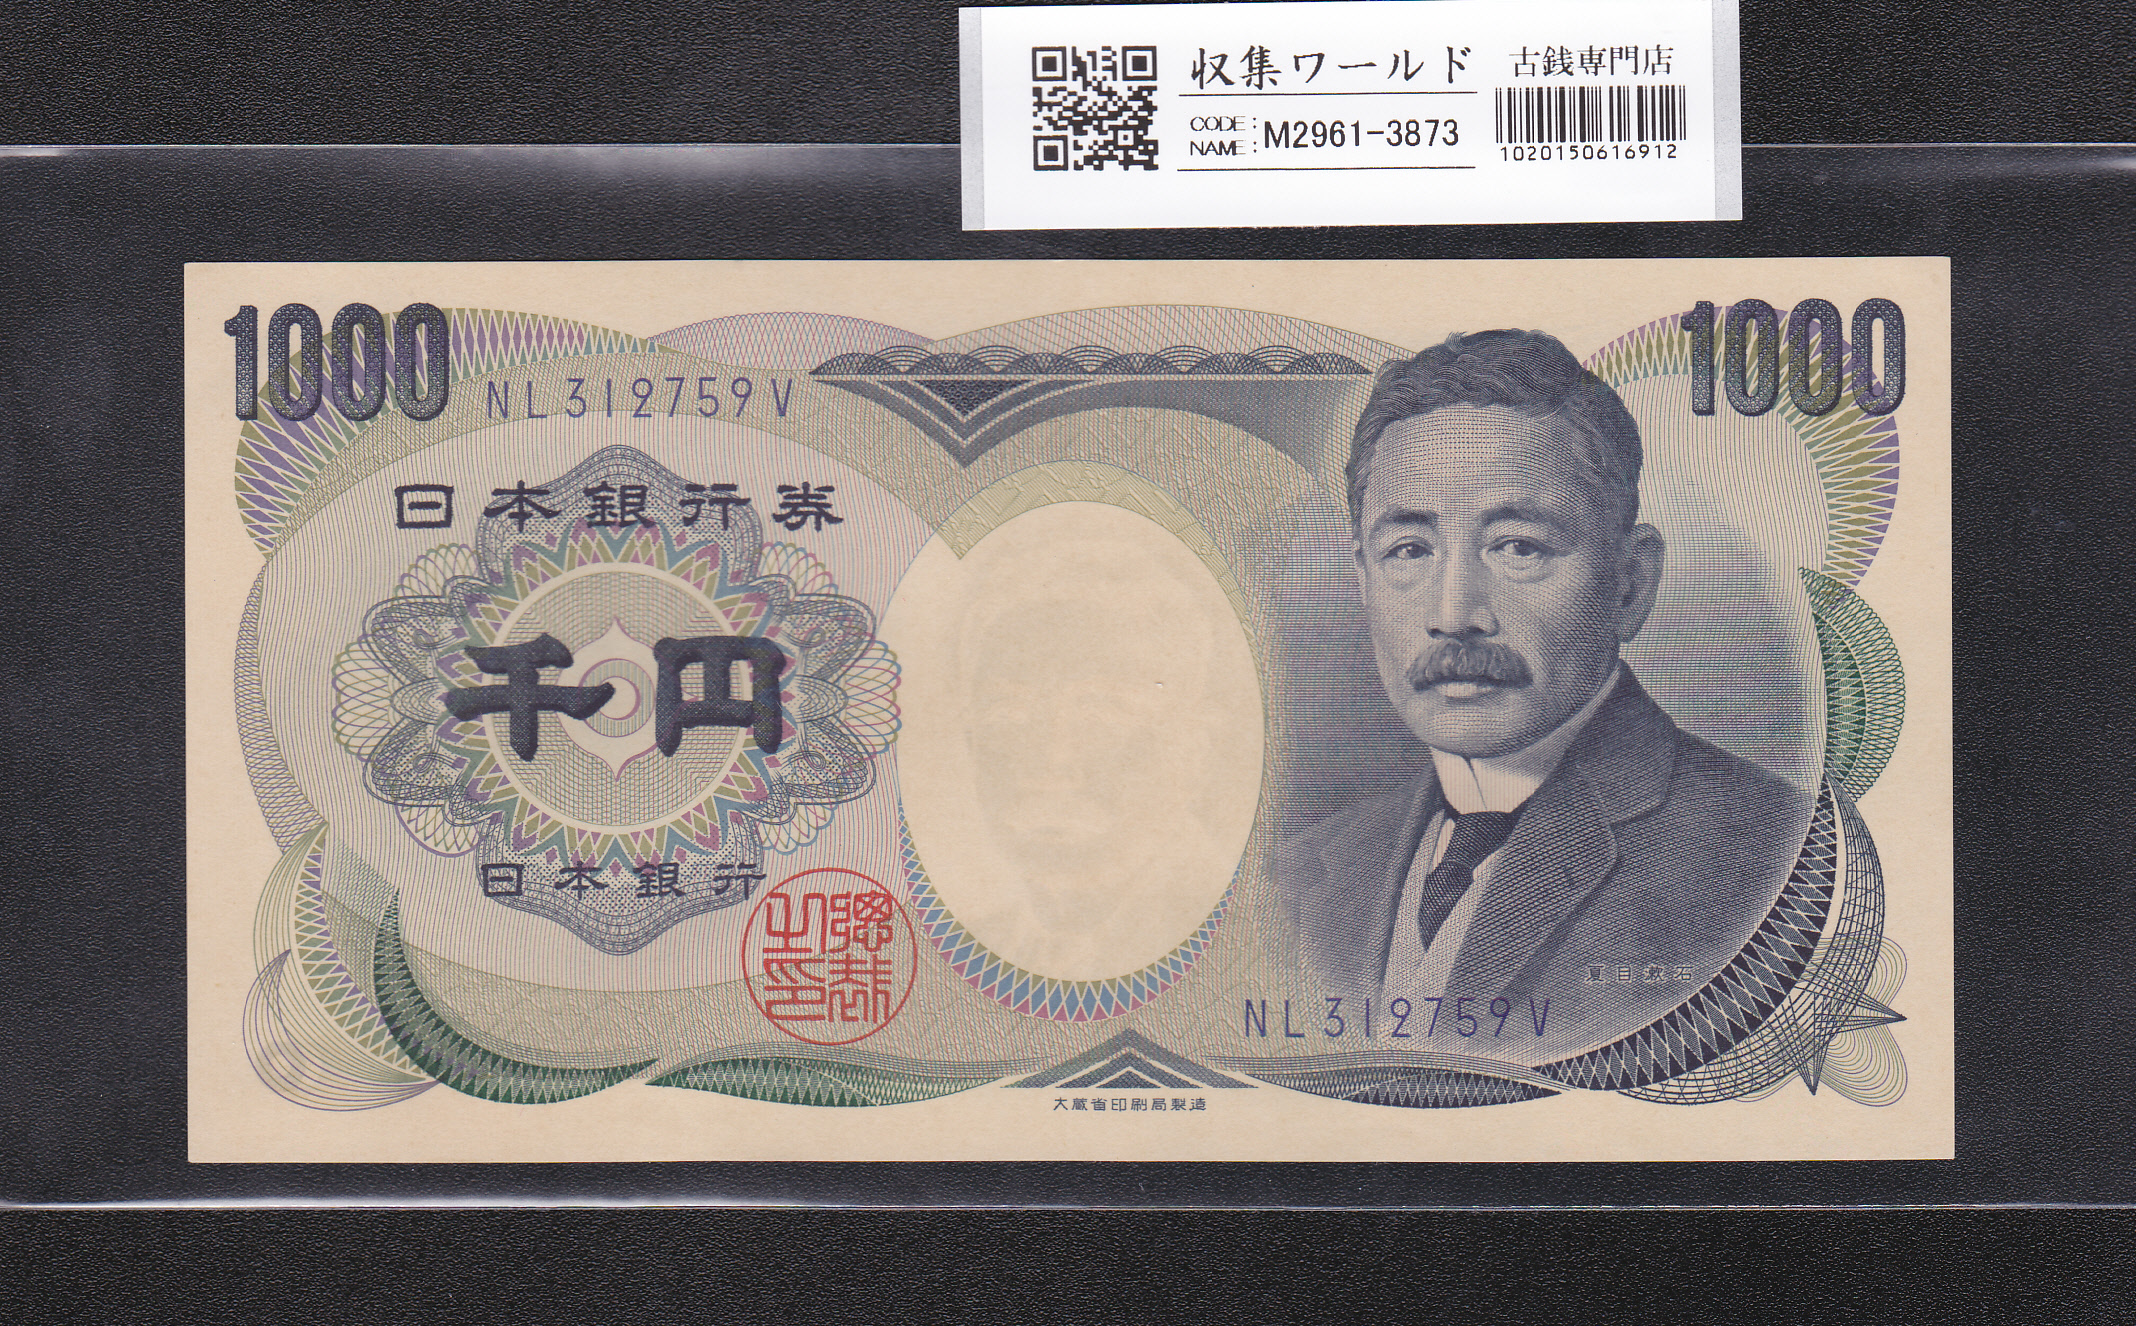 夏目漱石 1000円札/大蔵省銘 1990年 青色 後期/2桁 NL312759V 未使用